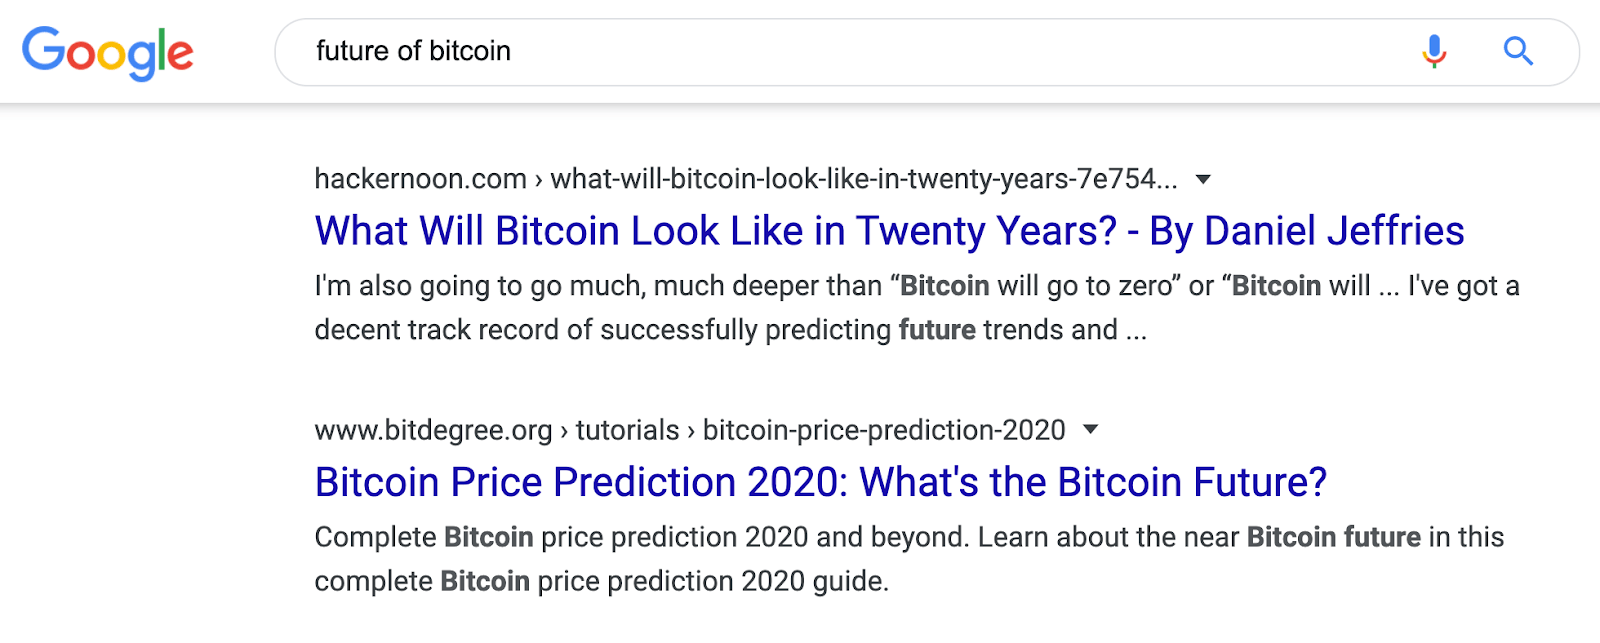 Các kết quả cho “tương lai của Bitcoin” là tất cả các ý kiến: 